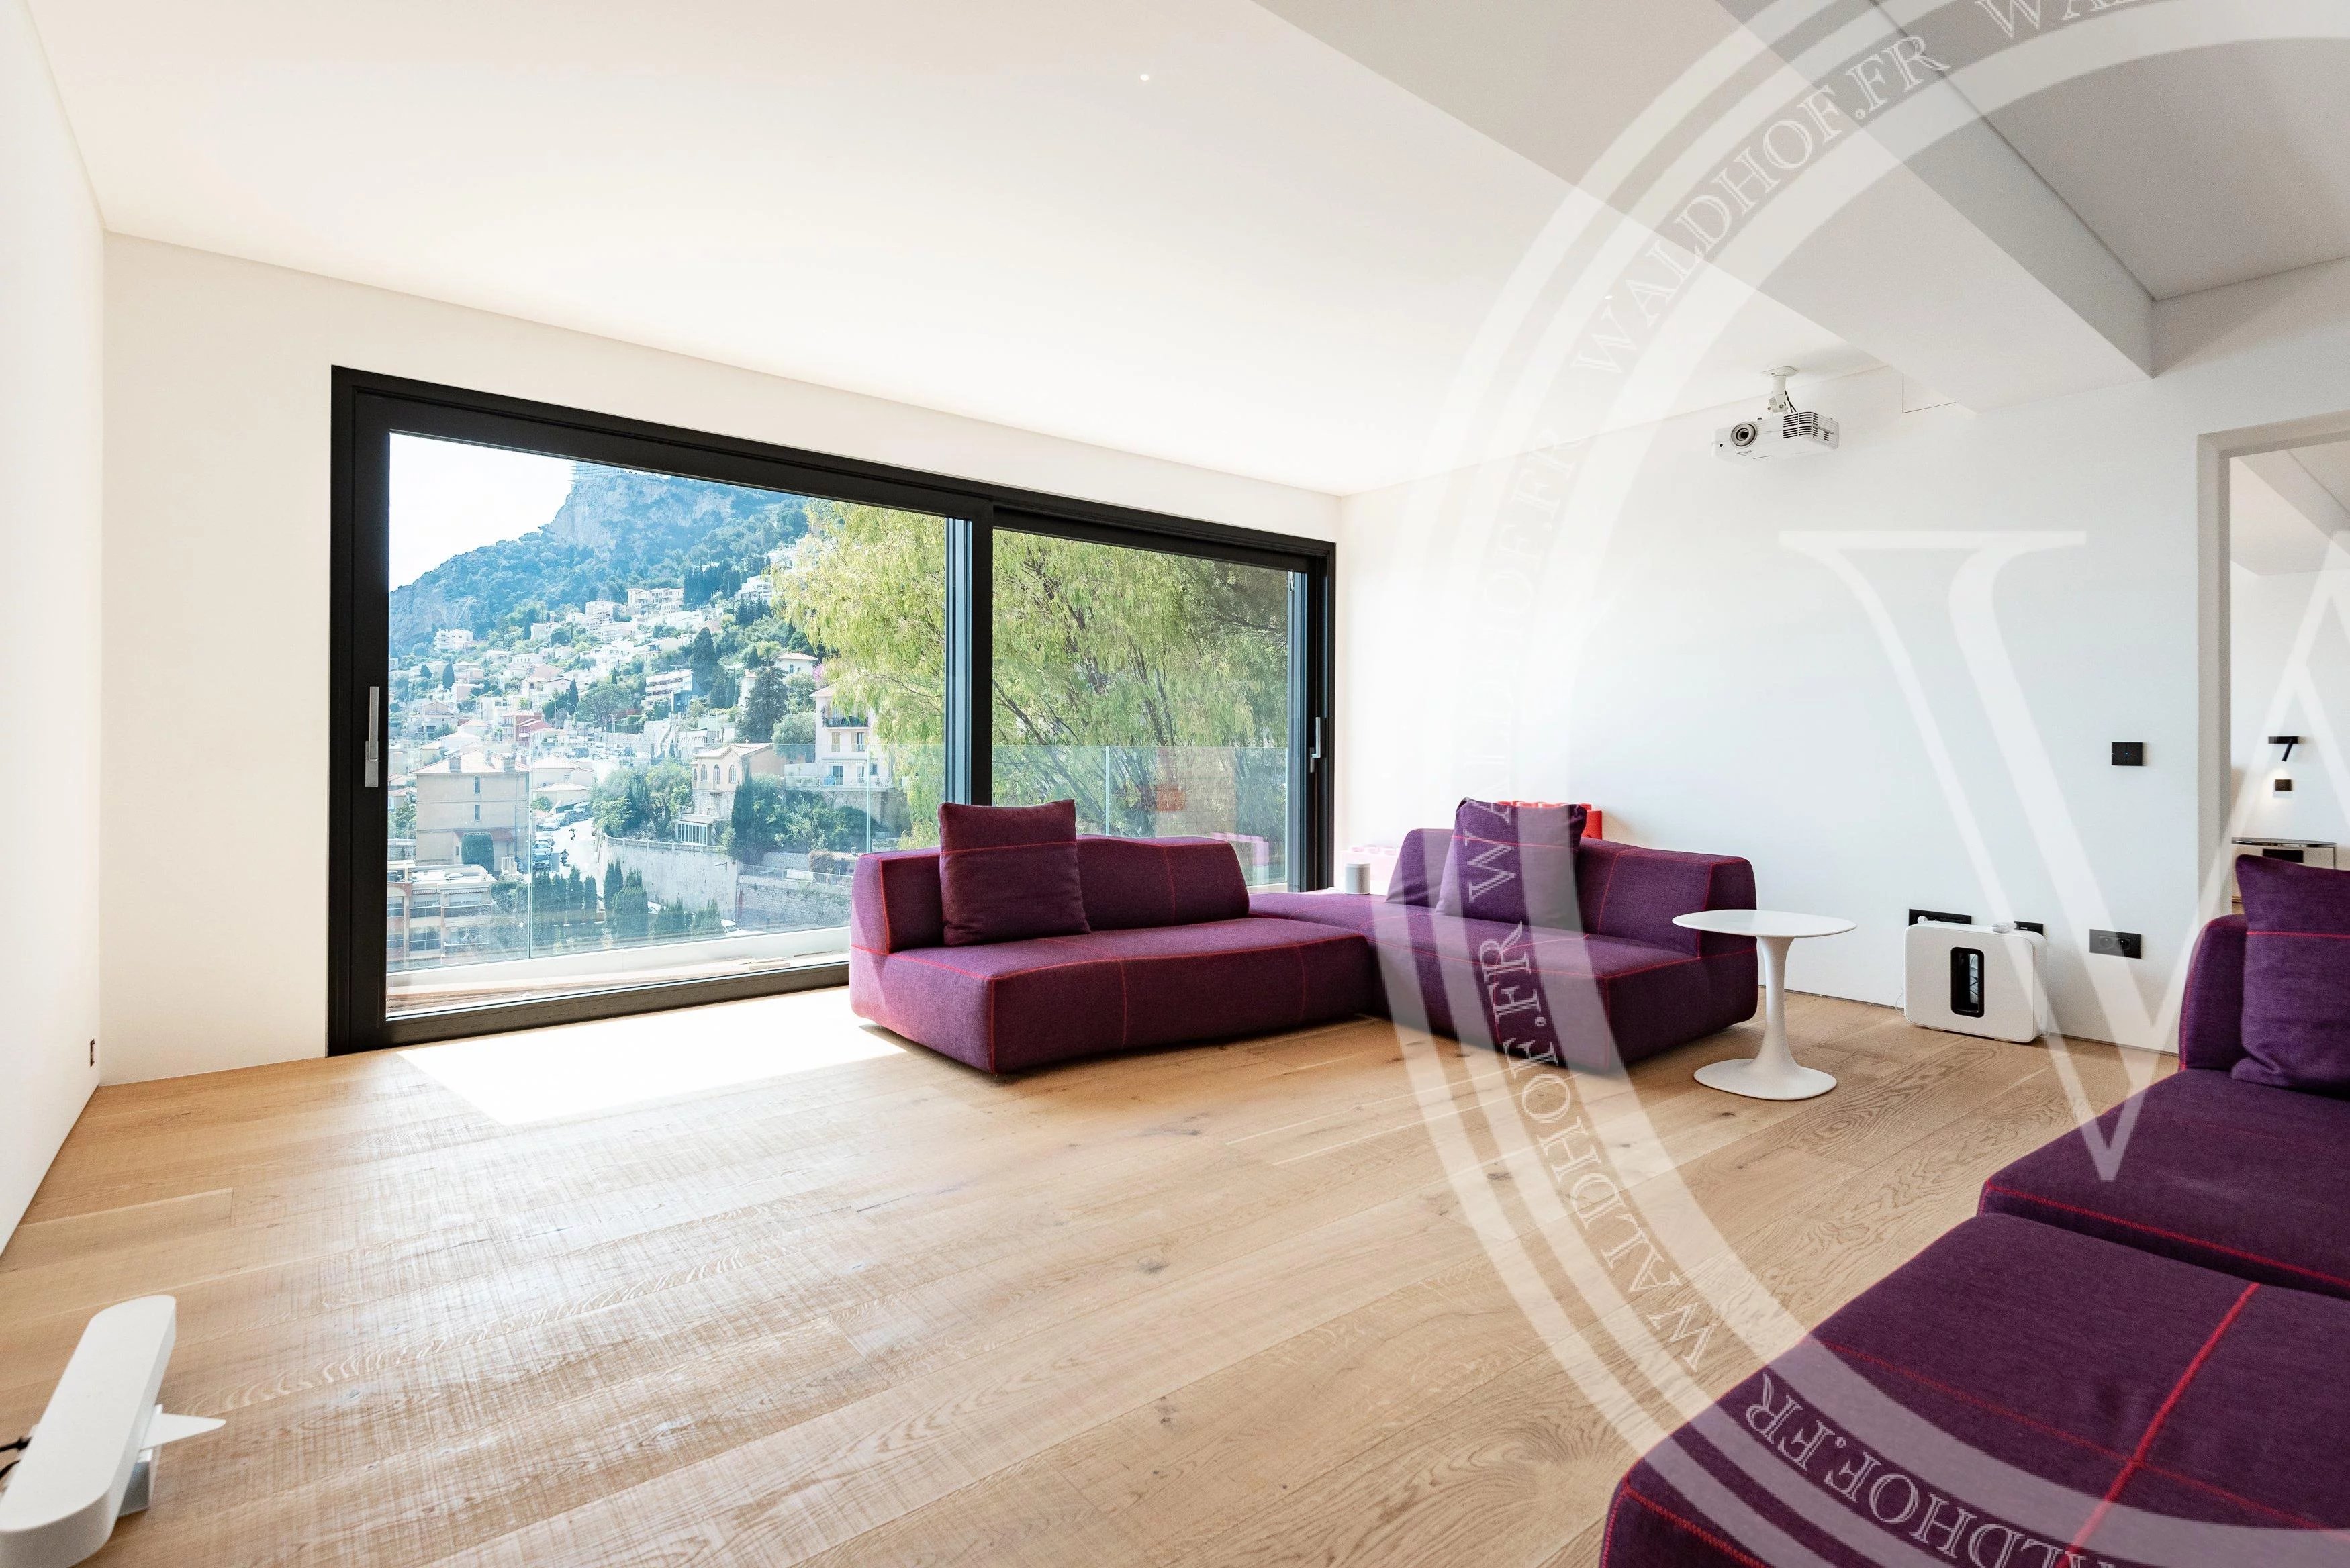 Villa neuve moderne à 5 min de Monaco avec vue panoramique